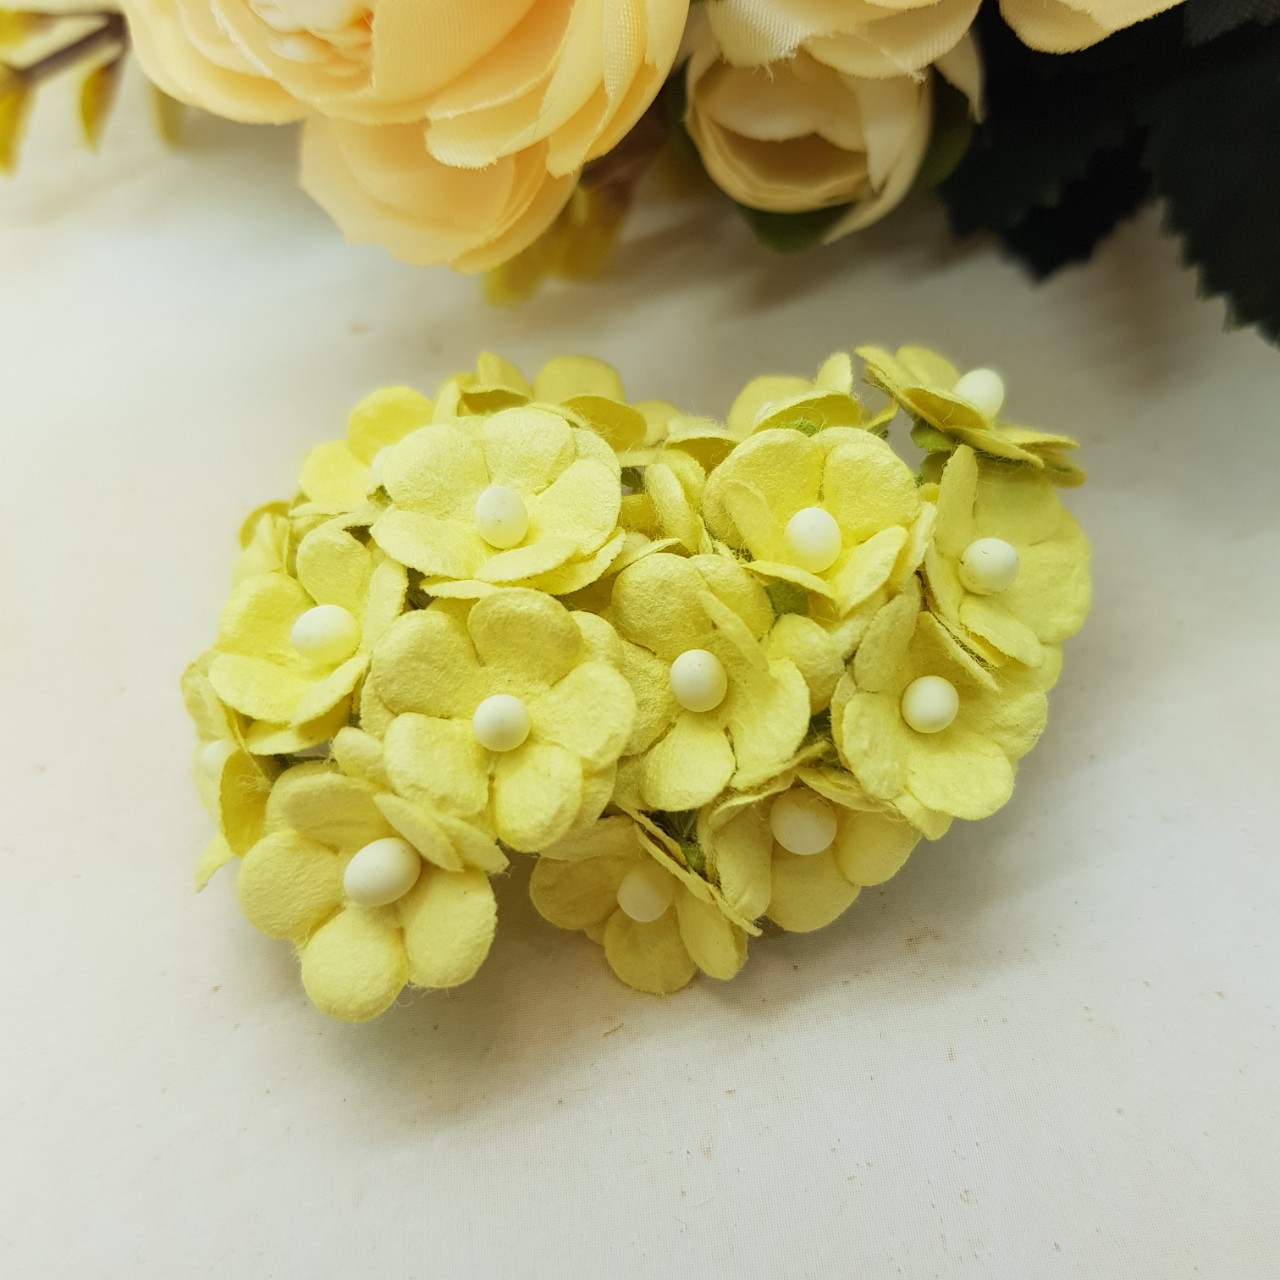 Набор из 10 декоративных цветков Sweetheart бледно желтого цвета, 15 мм